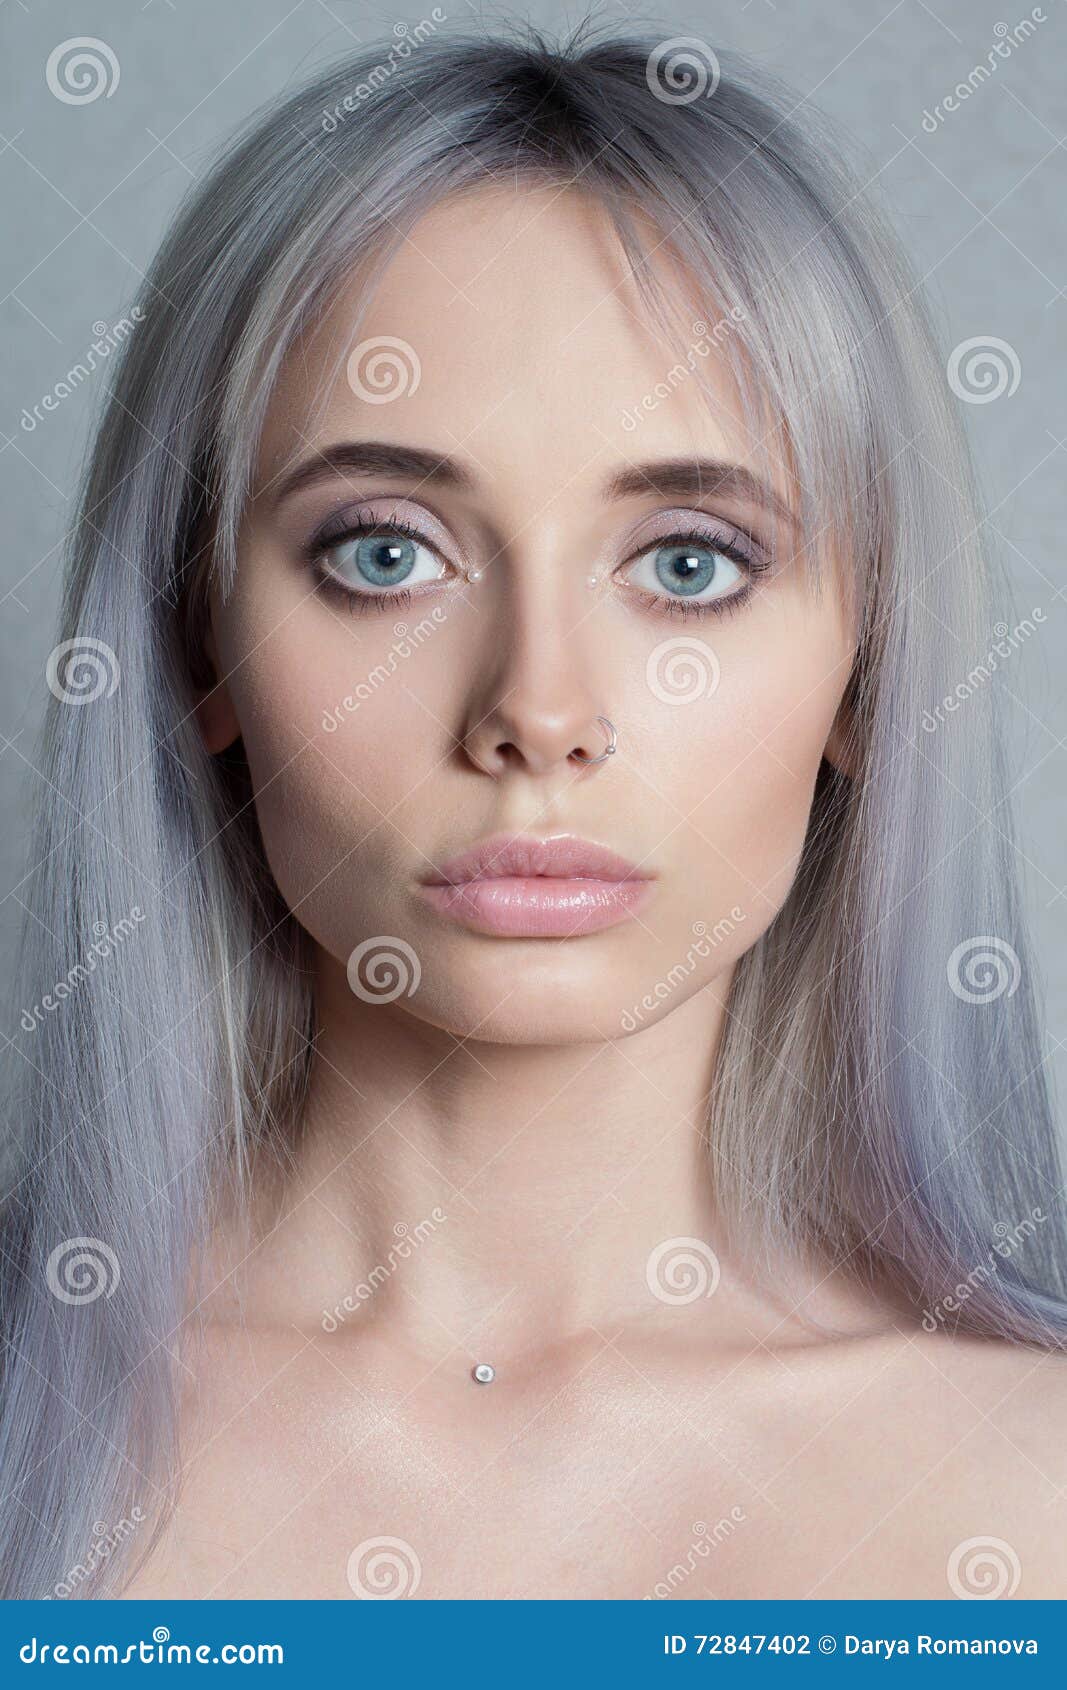 Grey hair ladies nude pics